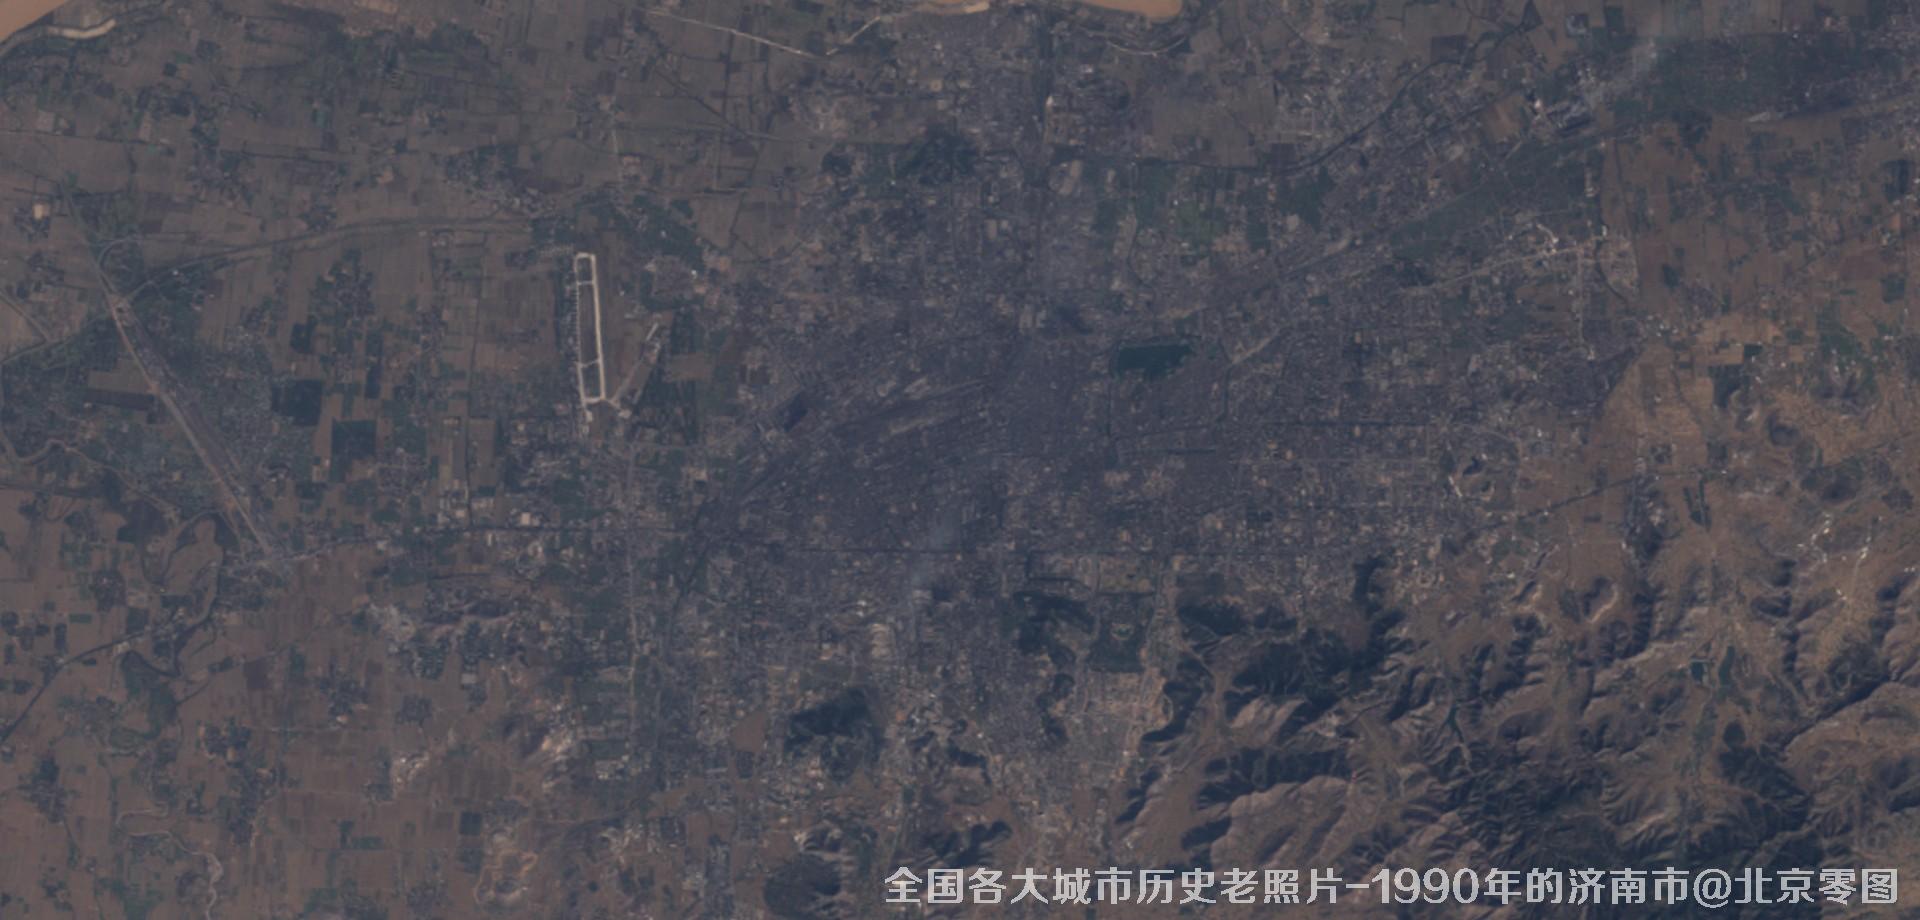 美国Landsat卫星拍摄的1990年的山东省济南市历史卫星影像图